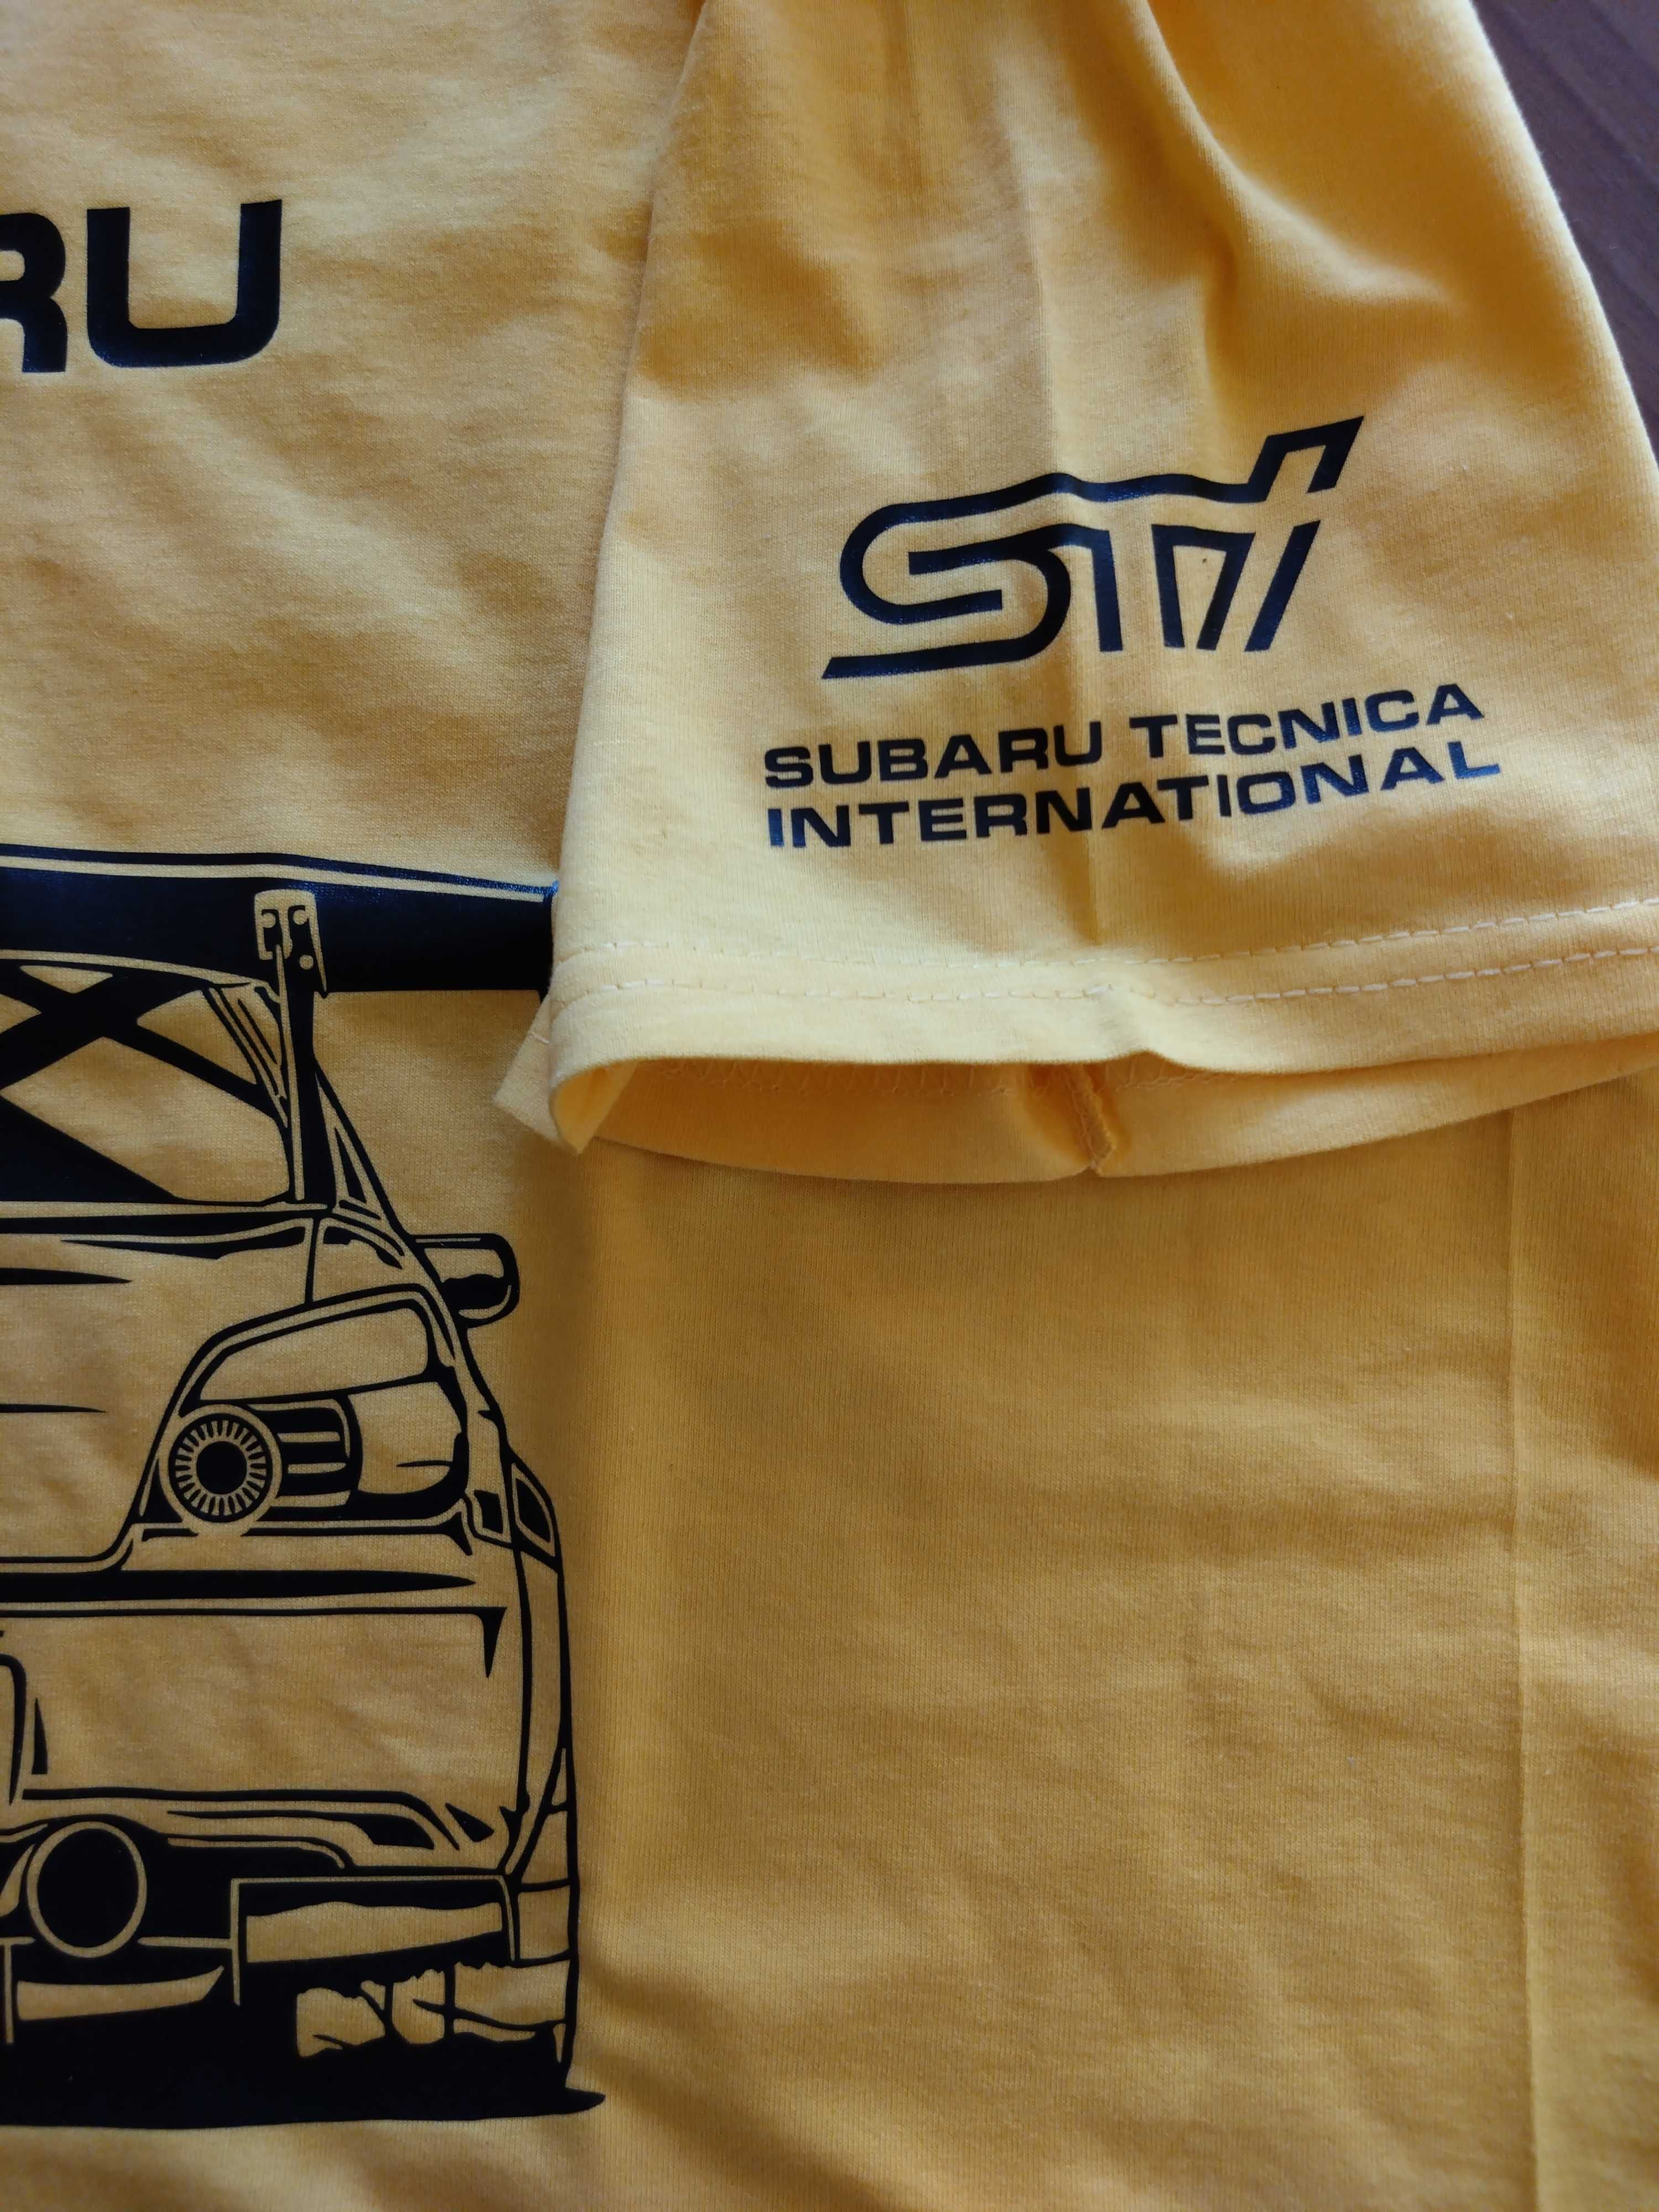 Тениска Субару Импреза, Subaru Impreza